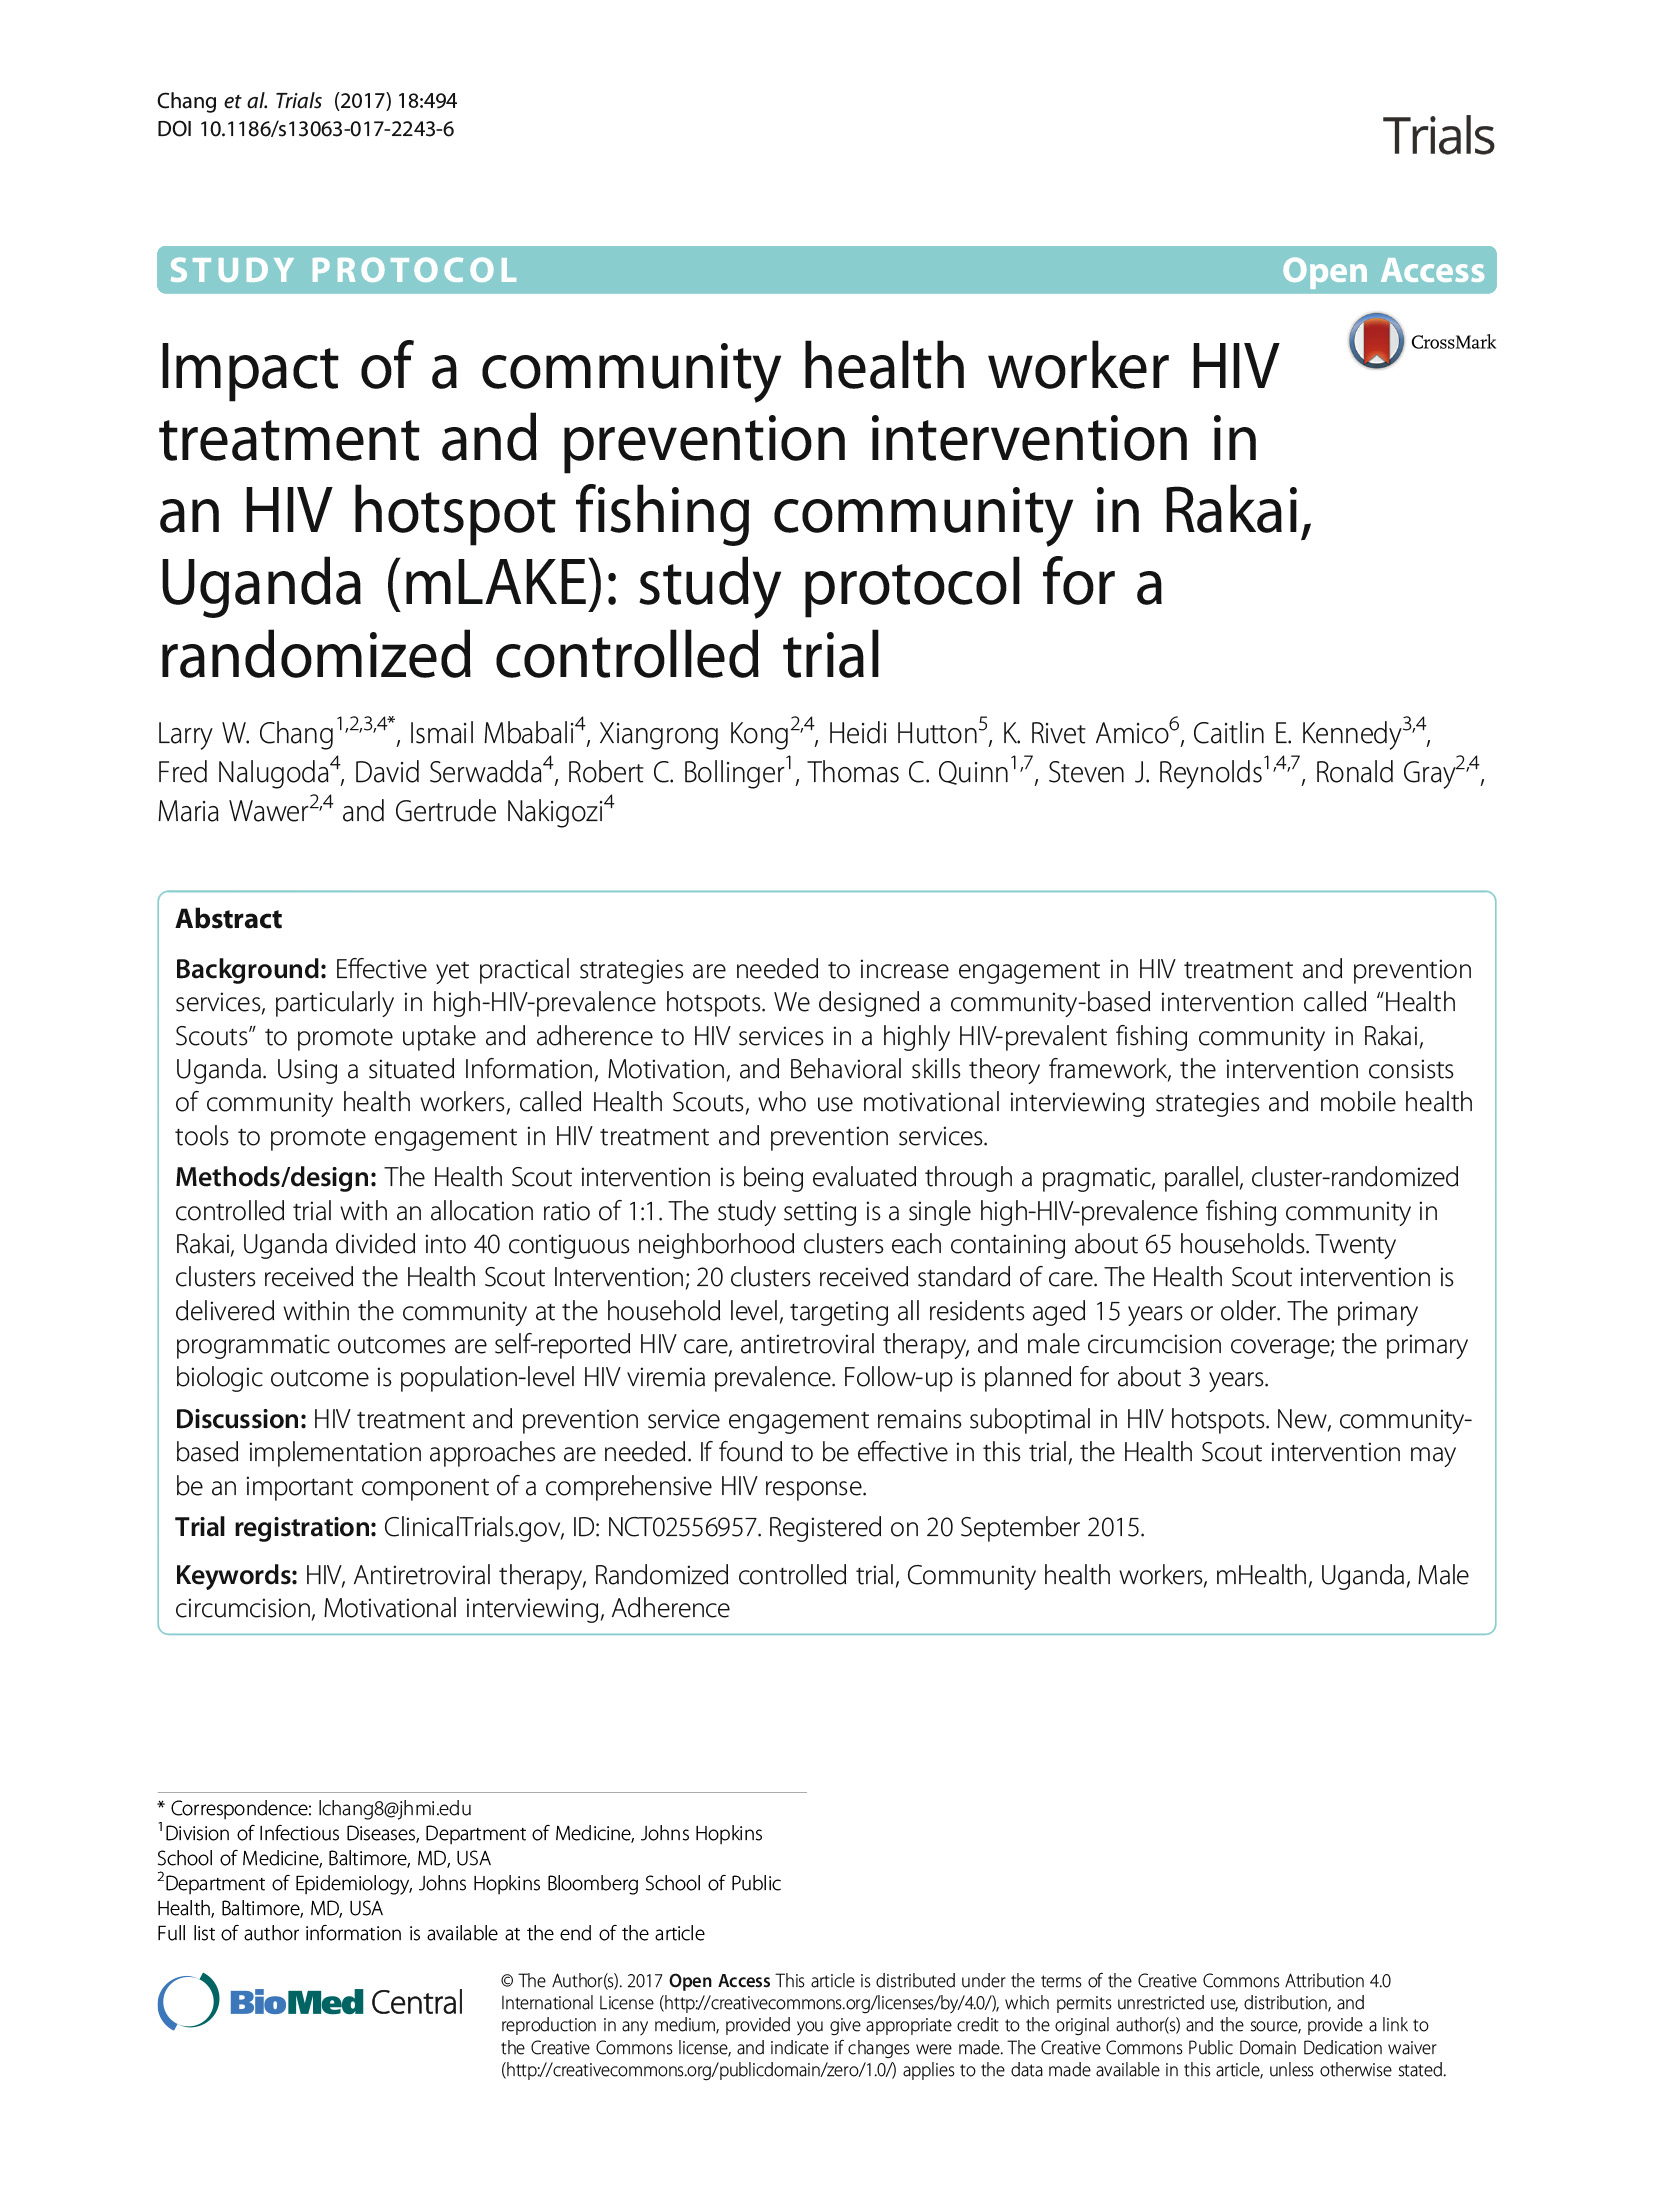 Impact d'une intervention de traitement et de prévention du VIH menée par des agents de santé communautaires dans une communauté de pêcheurs de Rakai, en Ouganda, où le VIH est endémique (mLAKE) : Protocole d'étude pour un essai contrôlé randomisé - couverture